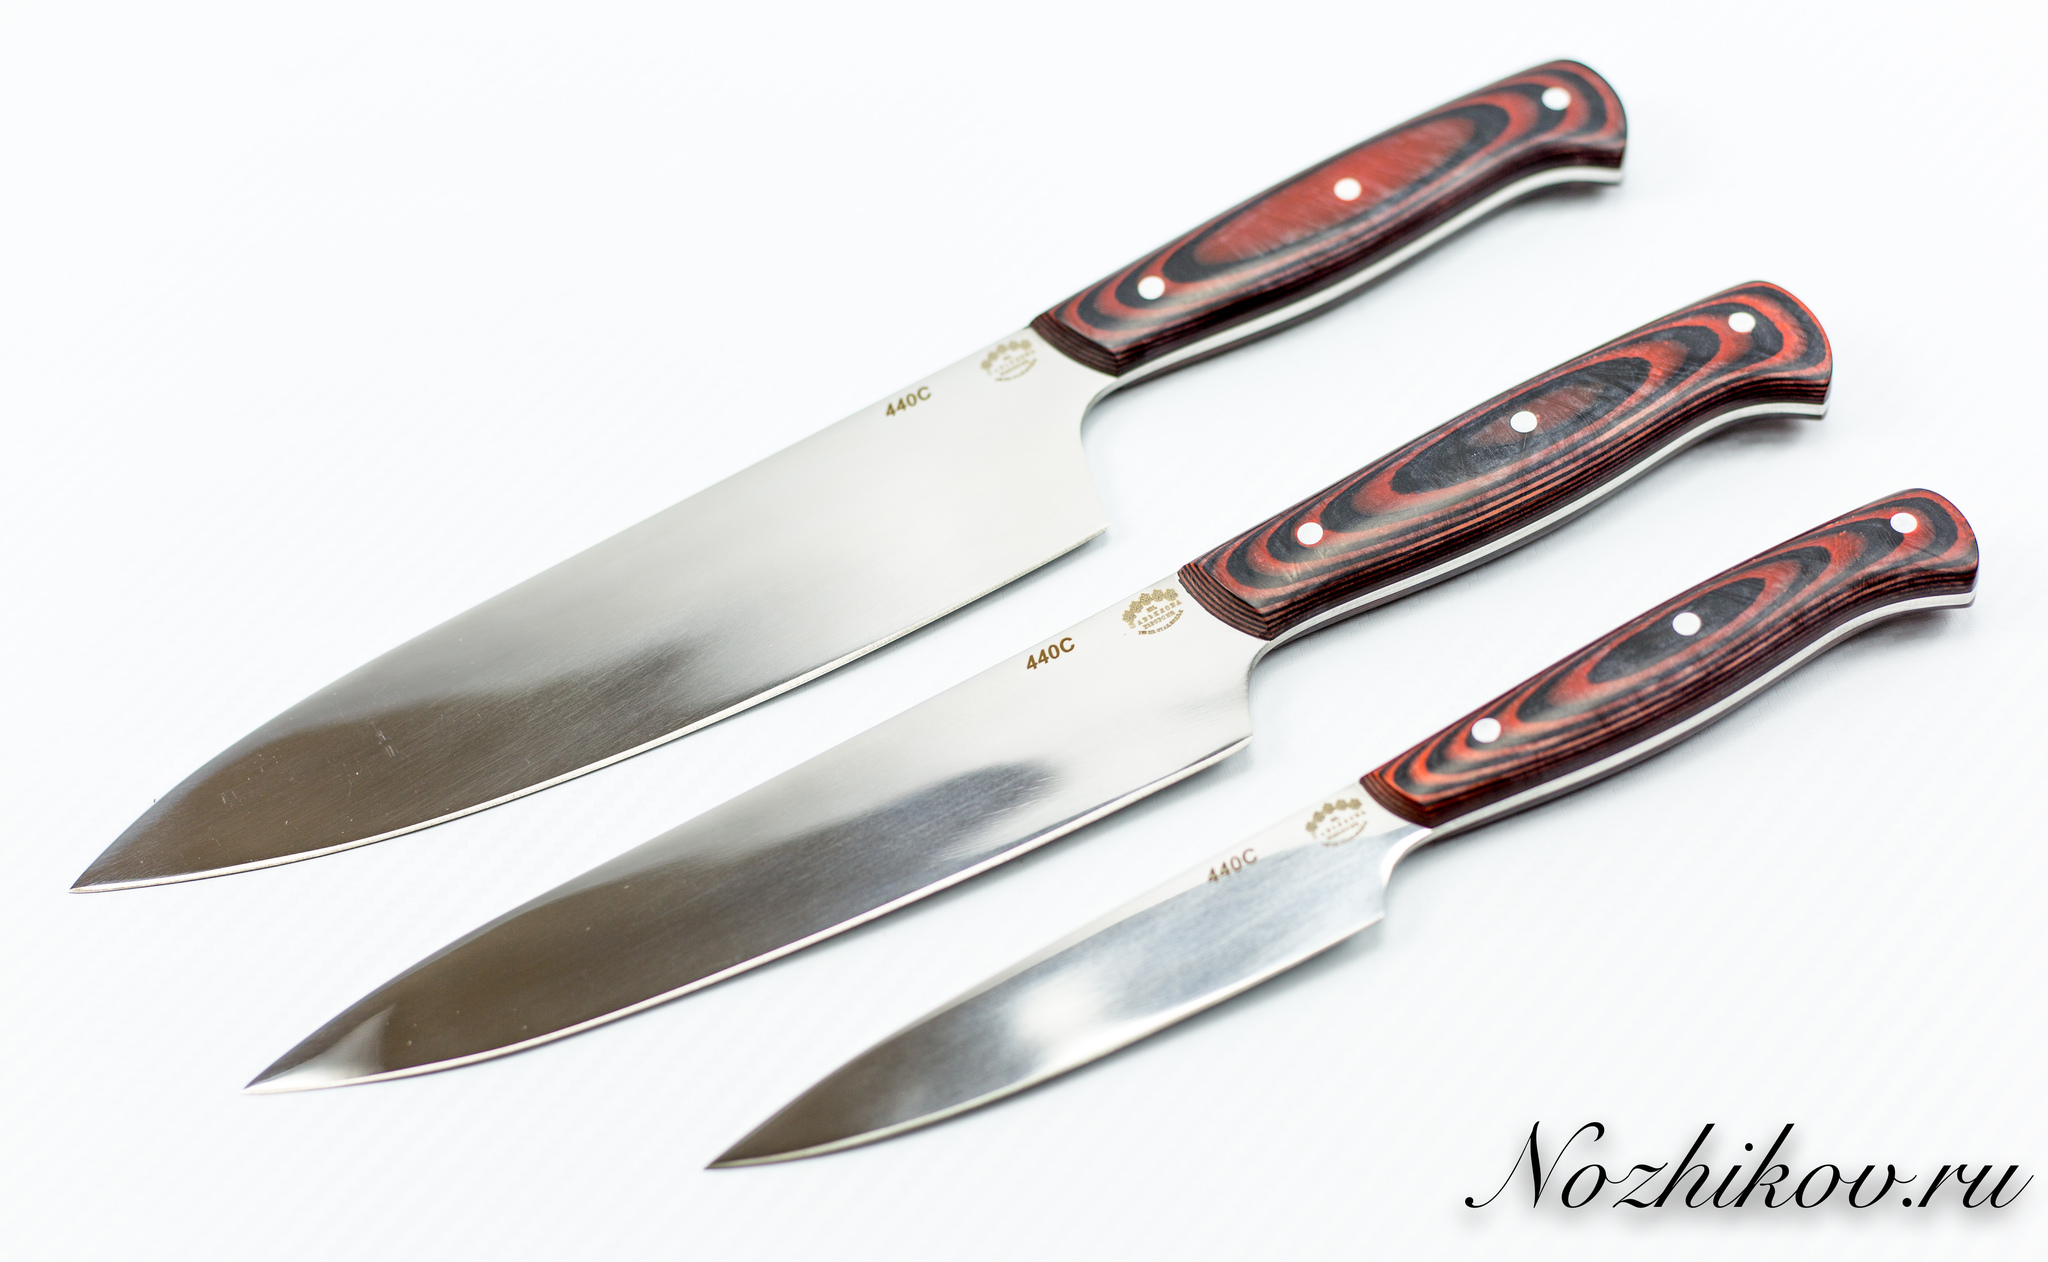  ножей для кухни, сталь 440С ручка микарта, zav_kuh1 по цене 14500 .